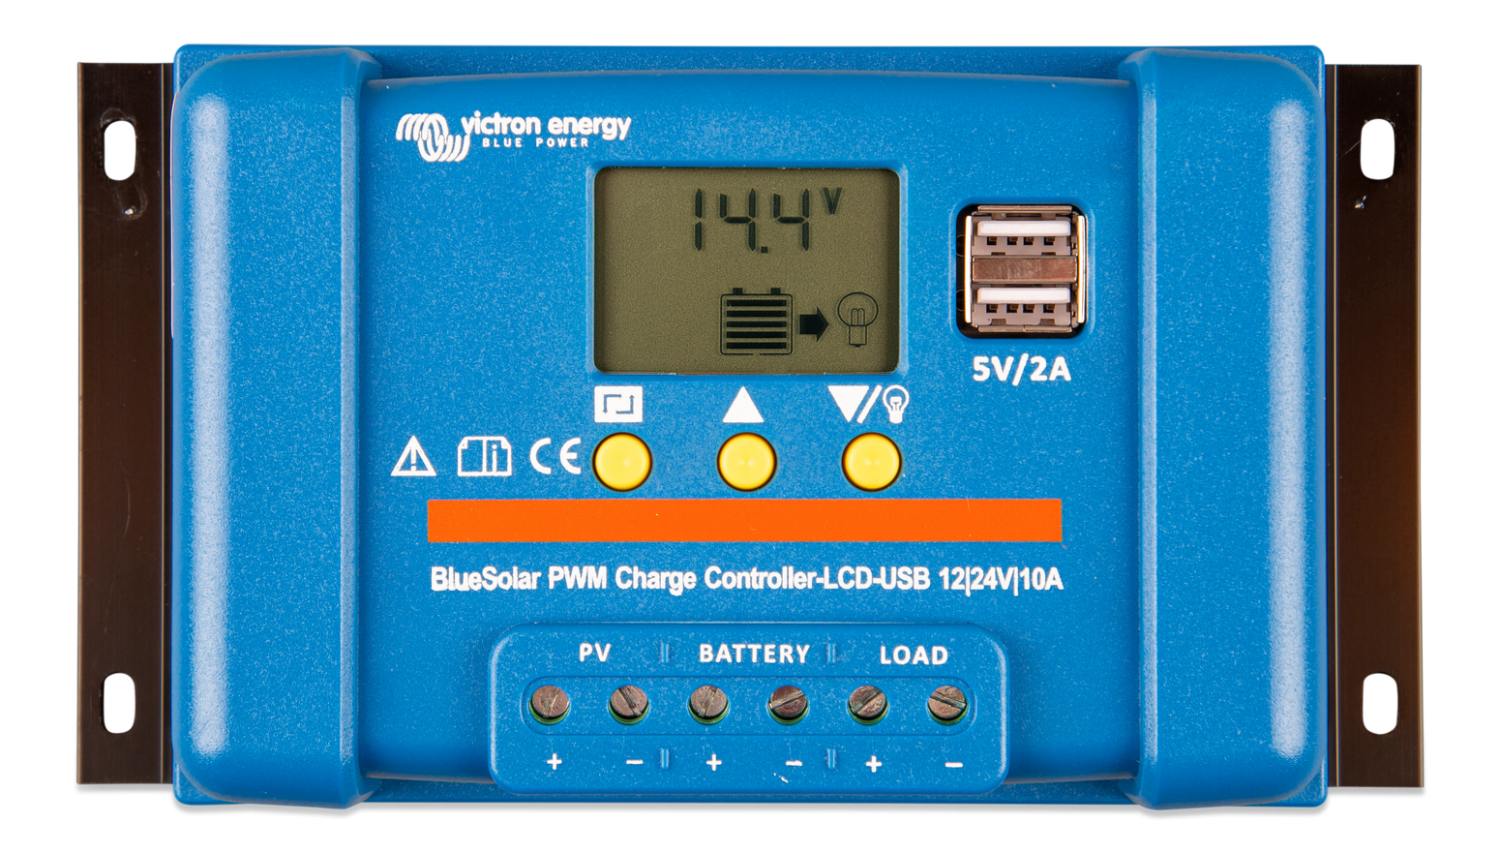 BlueSolar PWM-LCD&USB 12/24V-30A